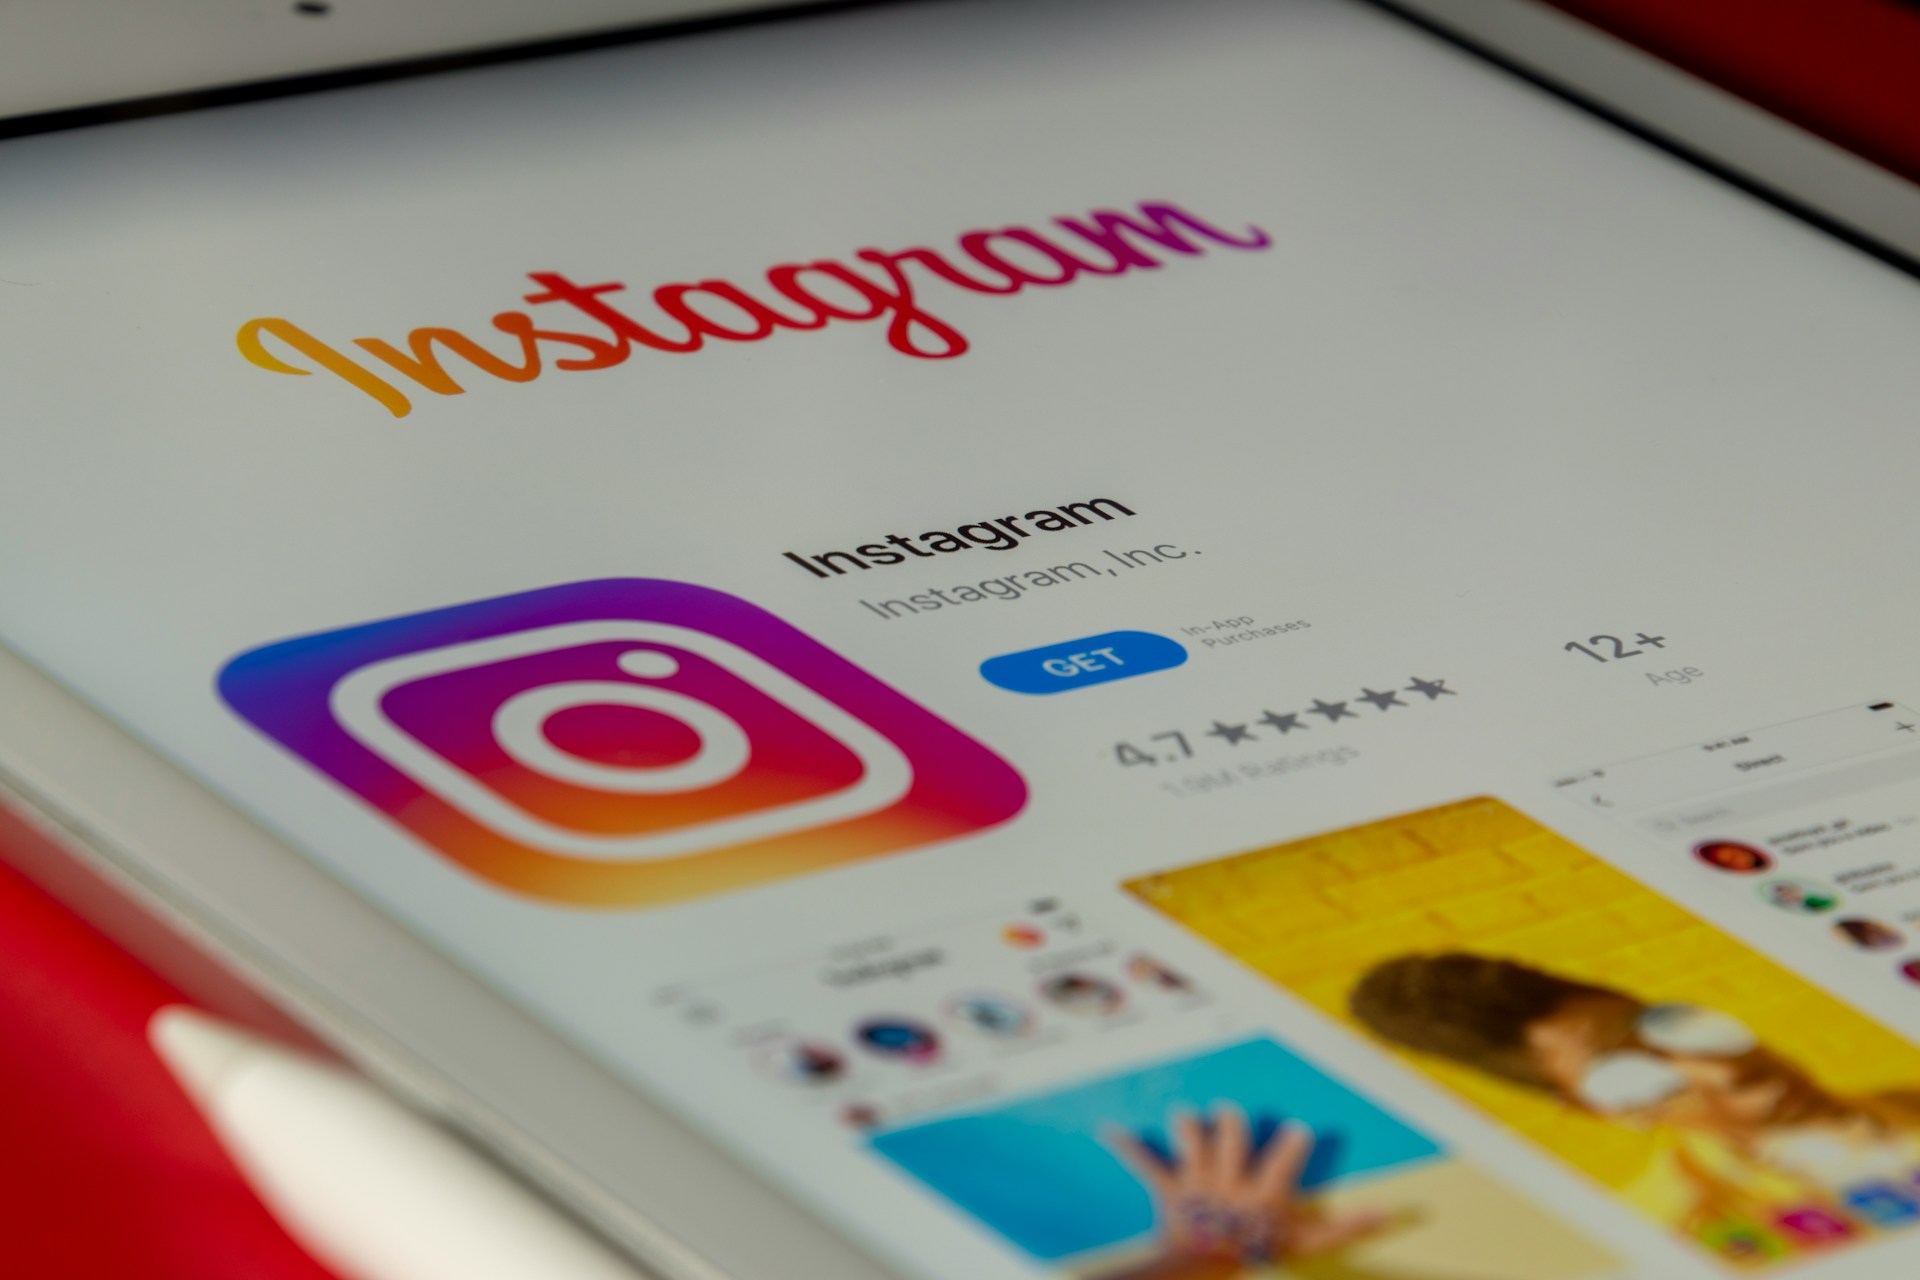 Instagram Gets Its Own App Clip, but Still No iPad App